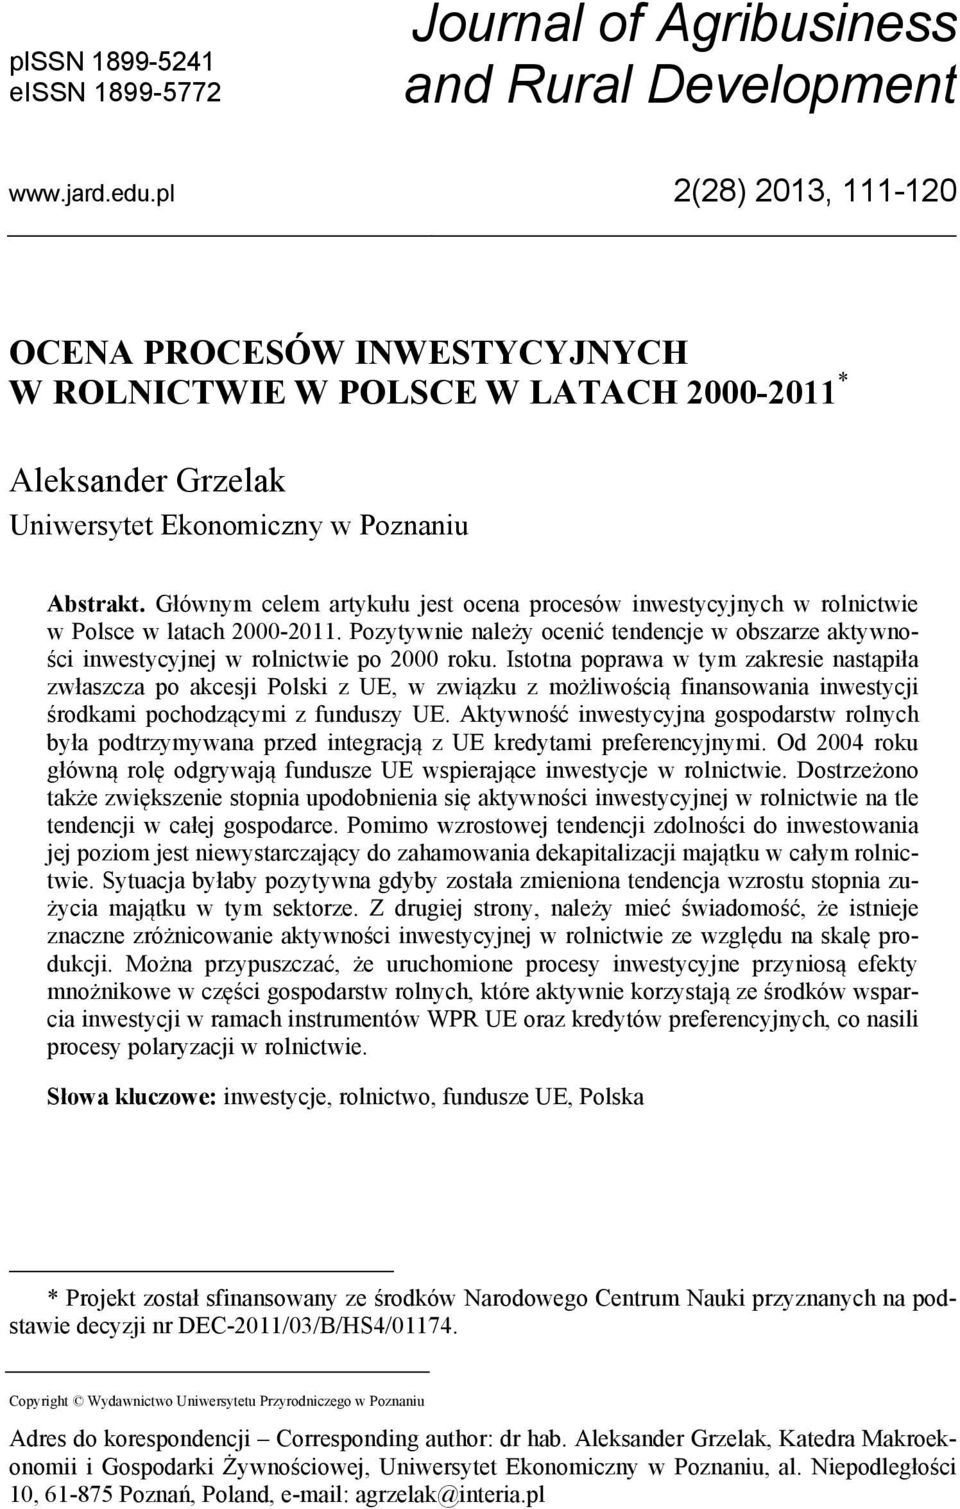 Głównym celem artykułu jest ocena procesów inwestycyjnych w rolnictwie w Polsce w latach 2000-2011. Pozytywnie należy ocenić tendencje w obszarze aktywności inwestycyjnej w rolnictwie po 2000 roku.